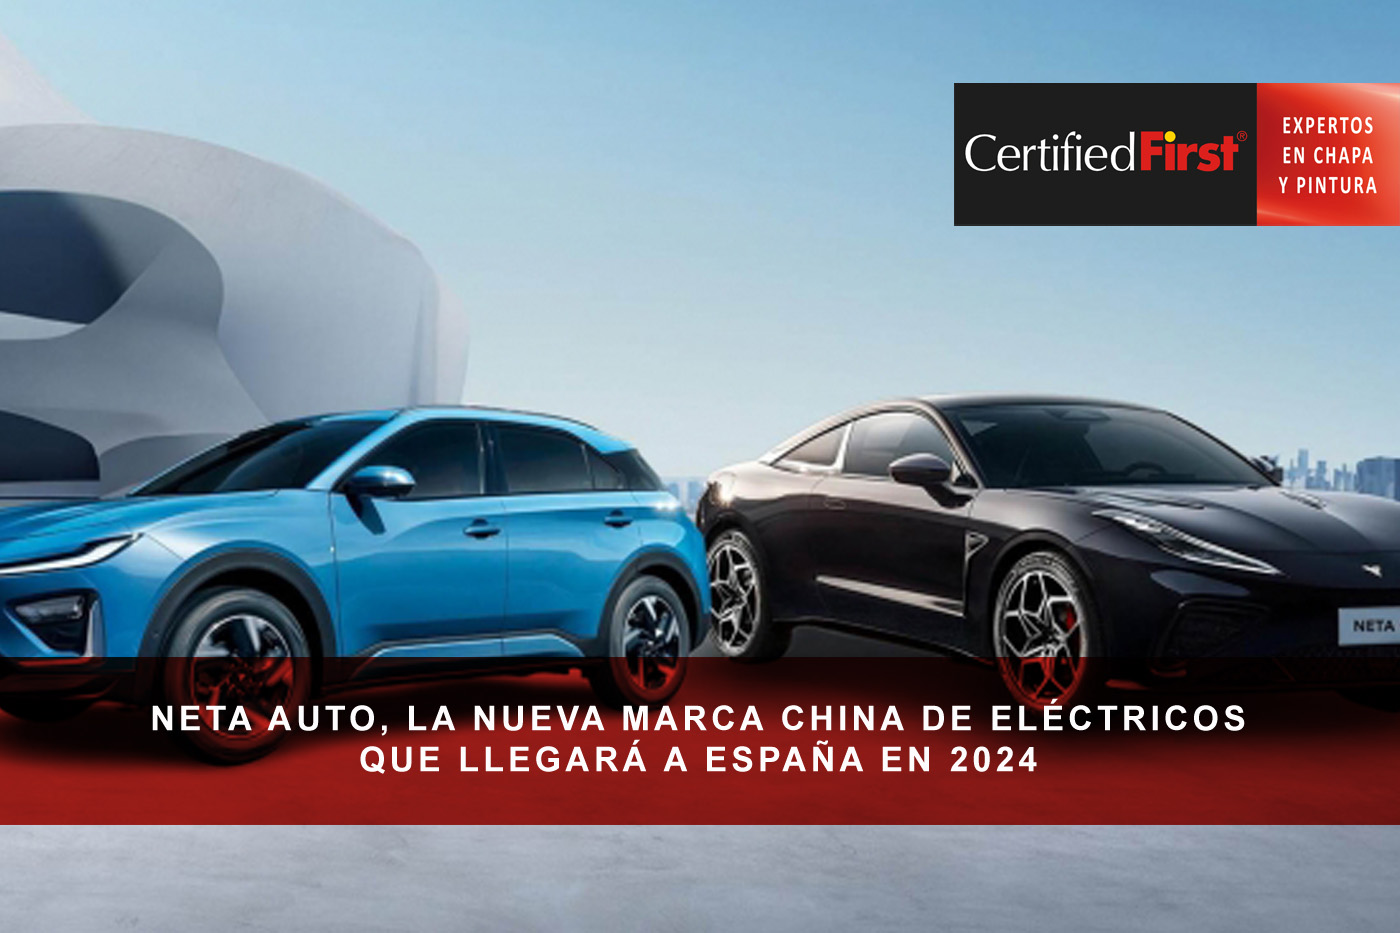 Neta Auto, la nueva marca china de eléctricos que llegará a España en 2024